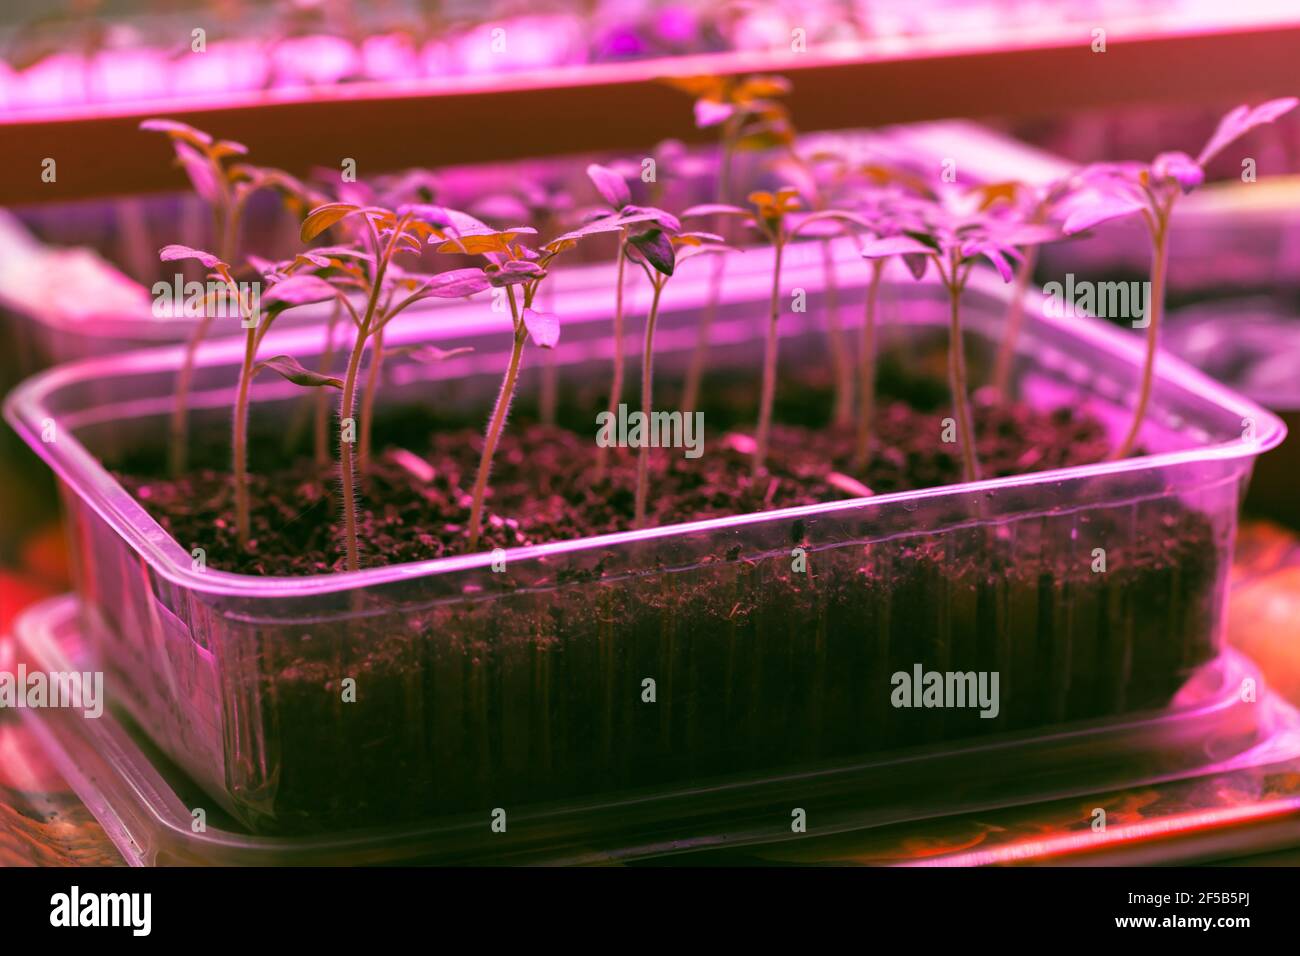 Luces led uv para plantas fotografías e imágenes de alta resolución - Alamy